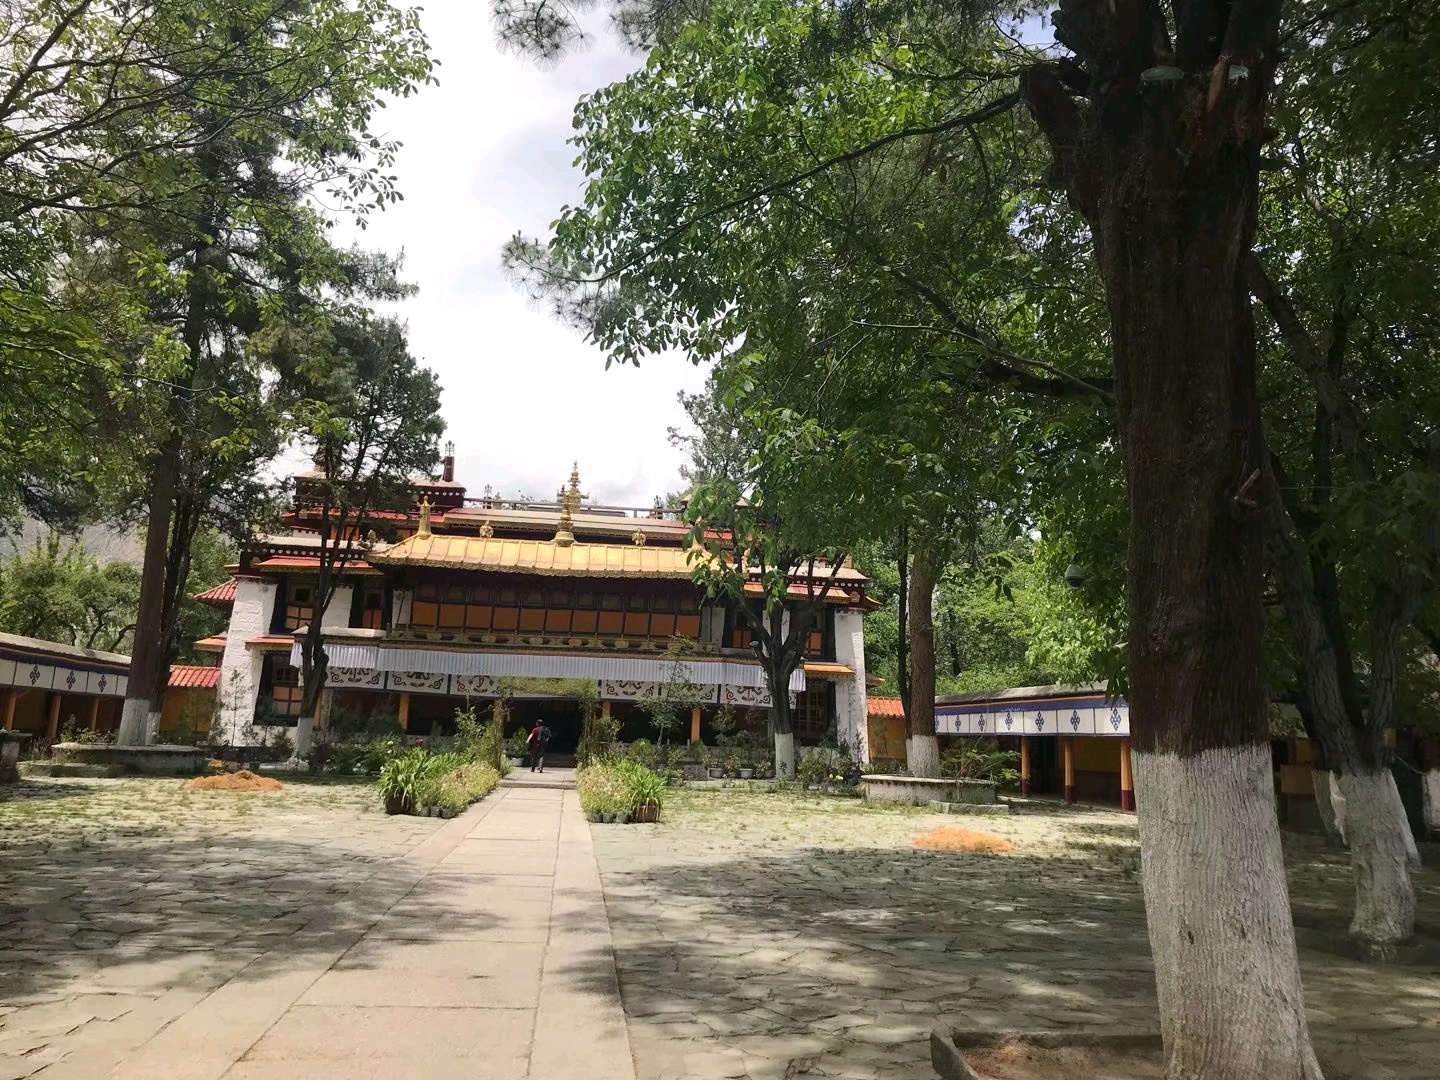 拉萨罗布林卡是历代达赖喇嘛消夏理政的地方